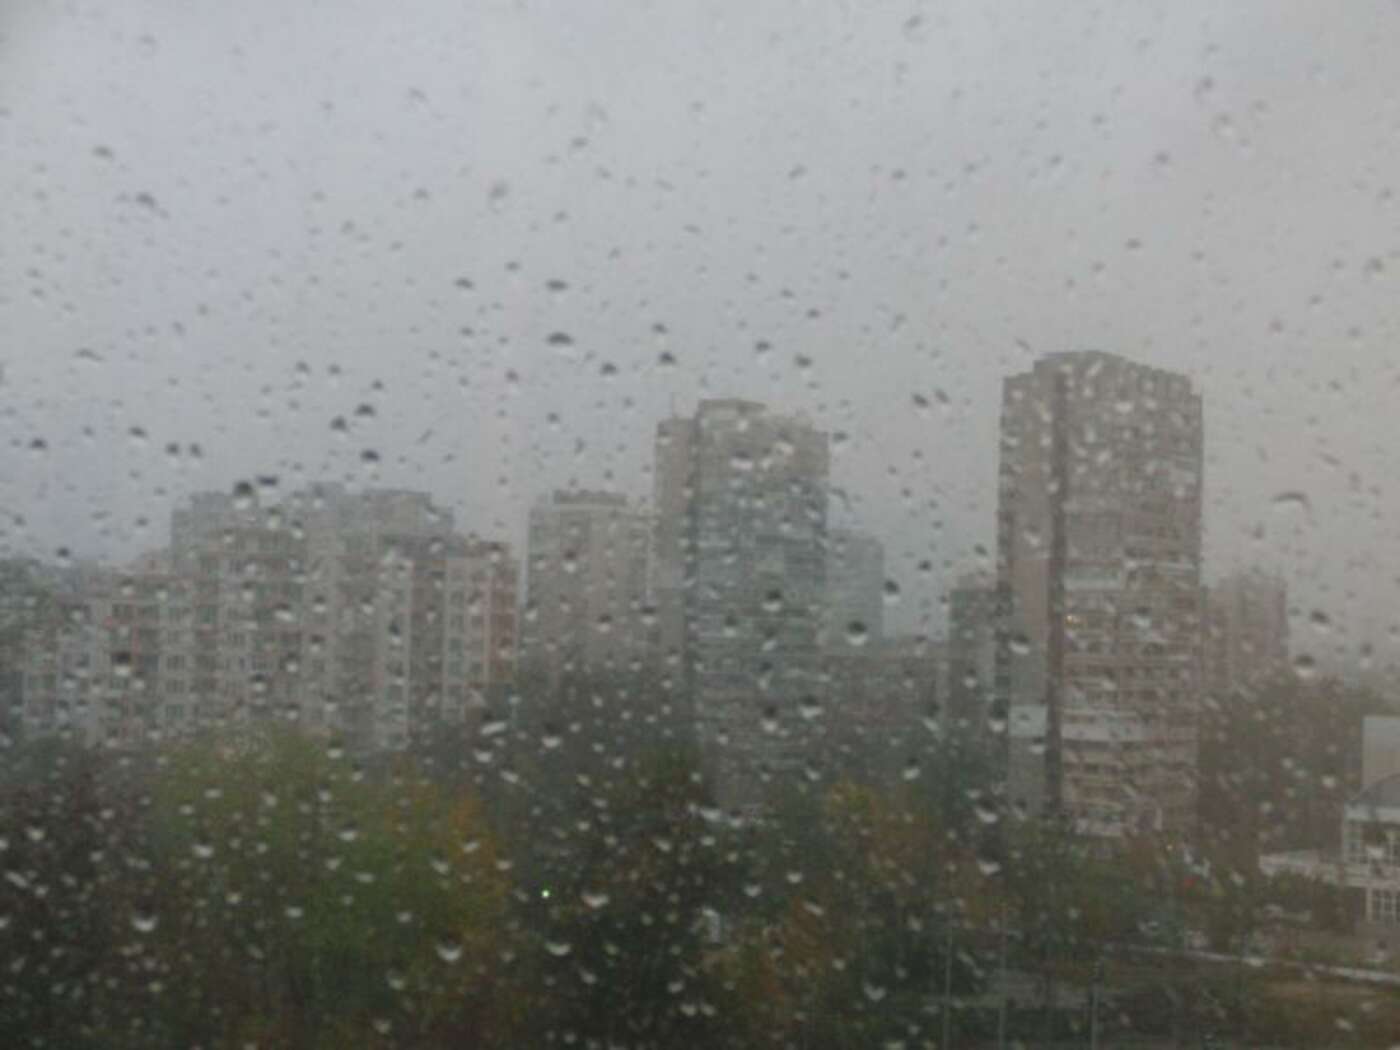 Regenwetter in Burgas